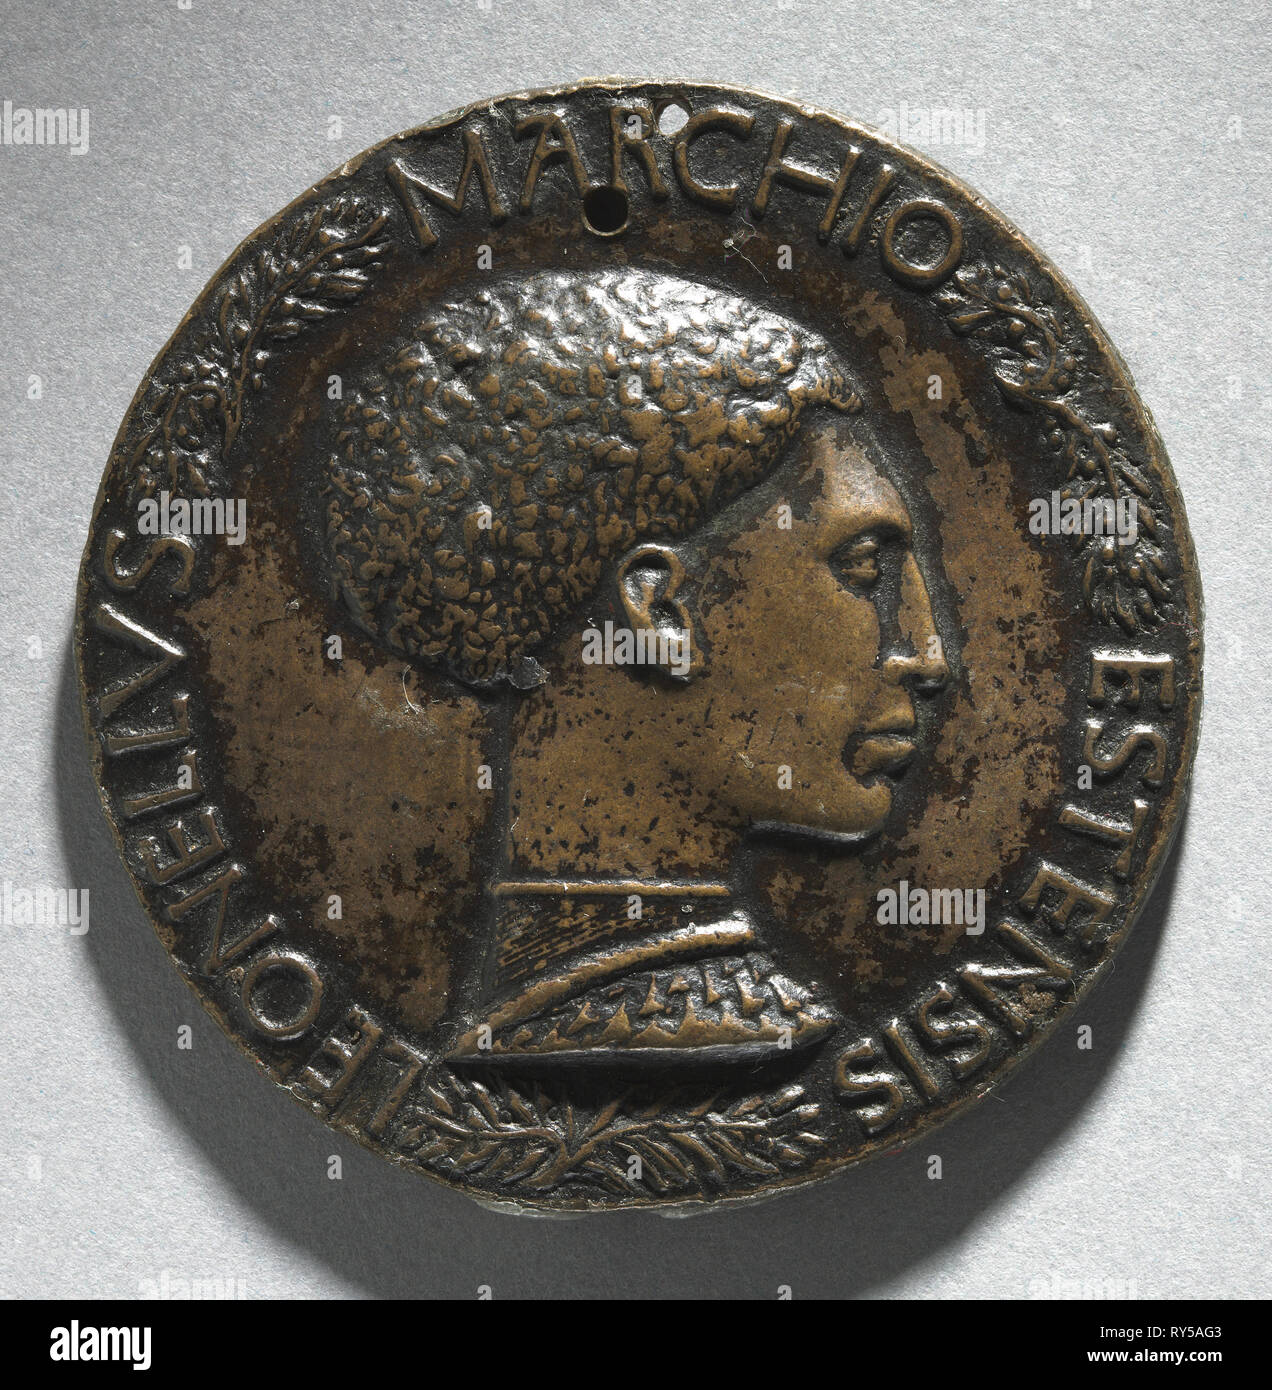 Portrait de Leonello D'Este, Marquis de Ferrare (envers et l'endroit), ch. 1440-1444. Pisanello (Italien, Ferrara, ch. 1395-1455). Bronze ; diamètre : 7 cm (2 3/4 po Banque D'Images